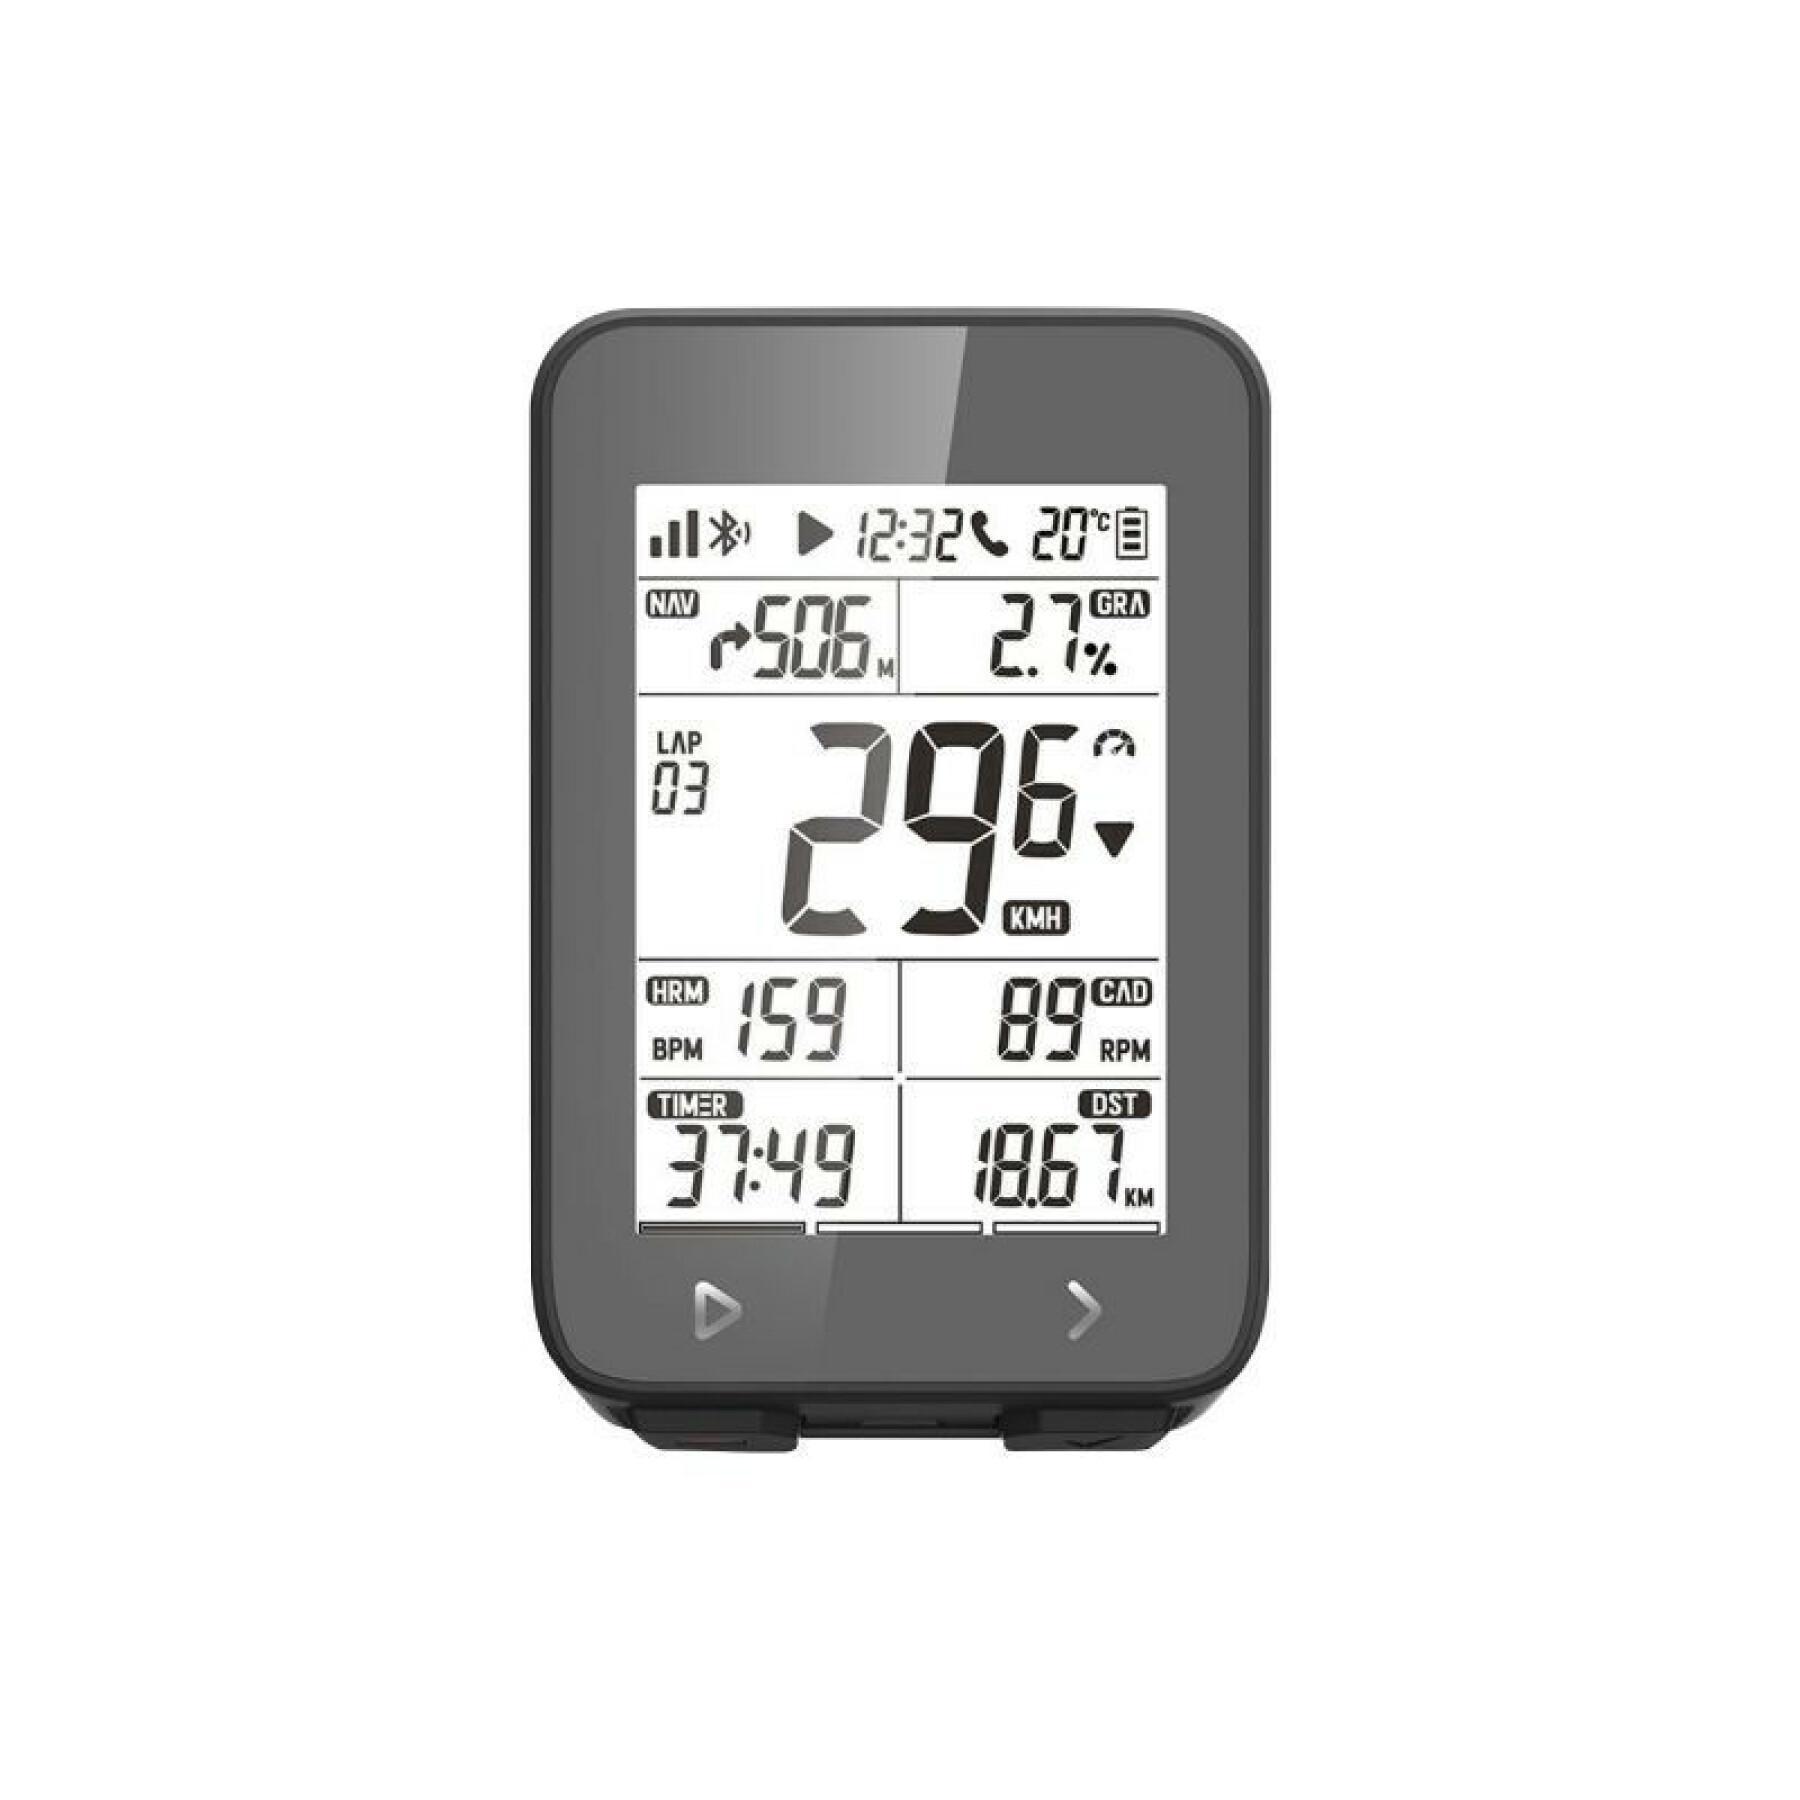 Gps - Geschwindigkeitsmesser, Höhenmesser, strava-kompatibler Temperaturmesser - optional: Trittfrequenz-, Geschwindigkeits- und Kardio-Sensor Igpsport